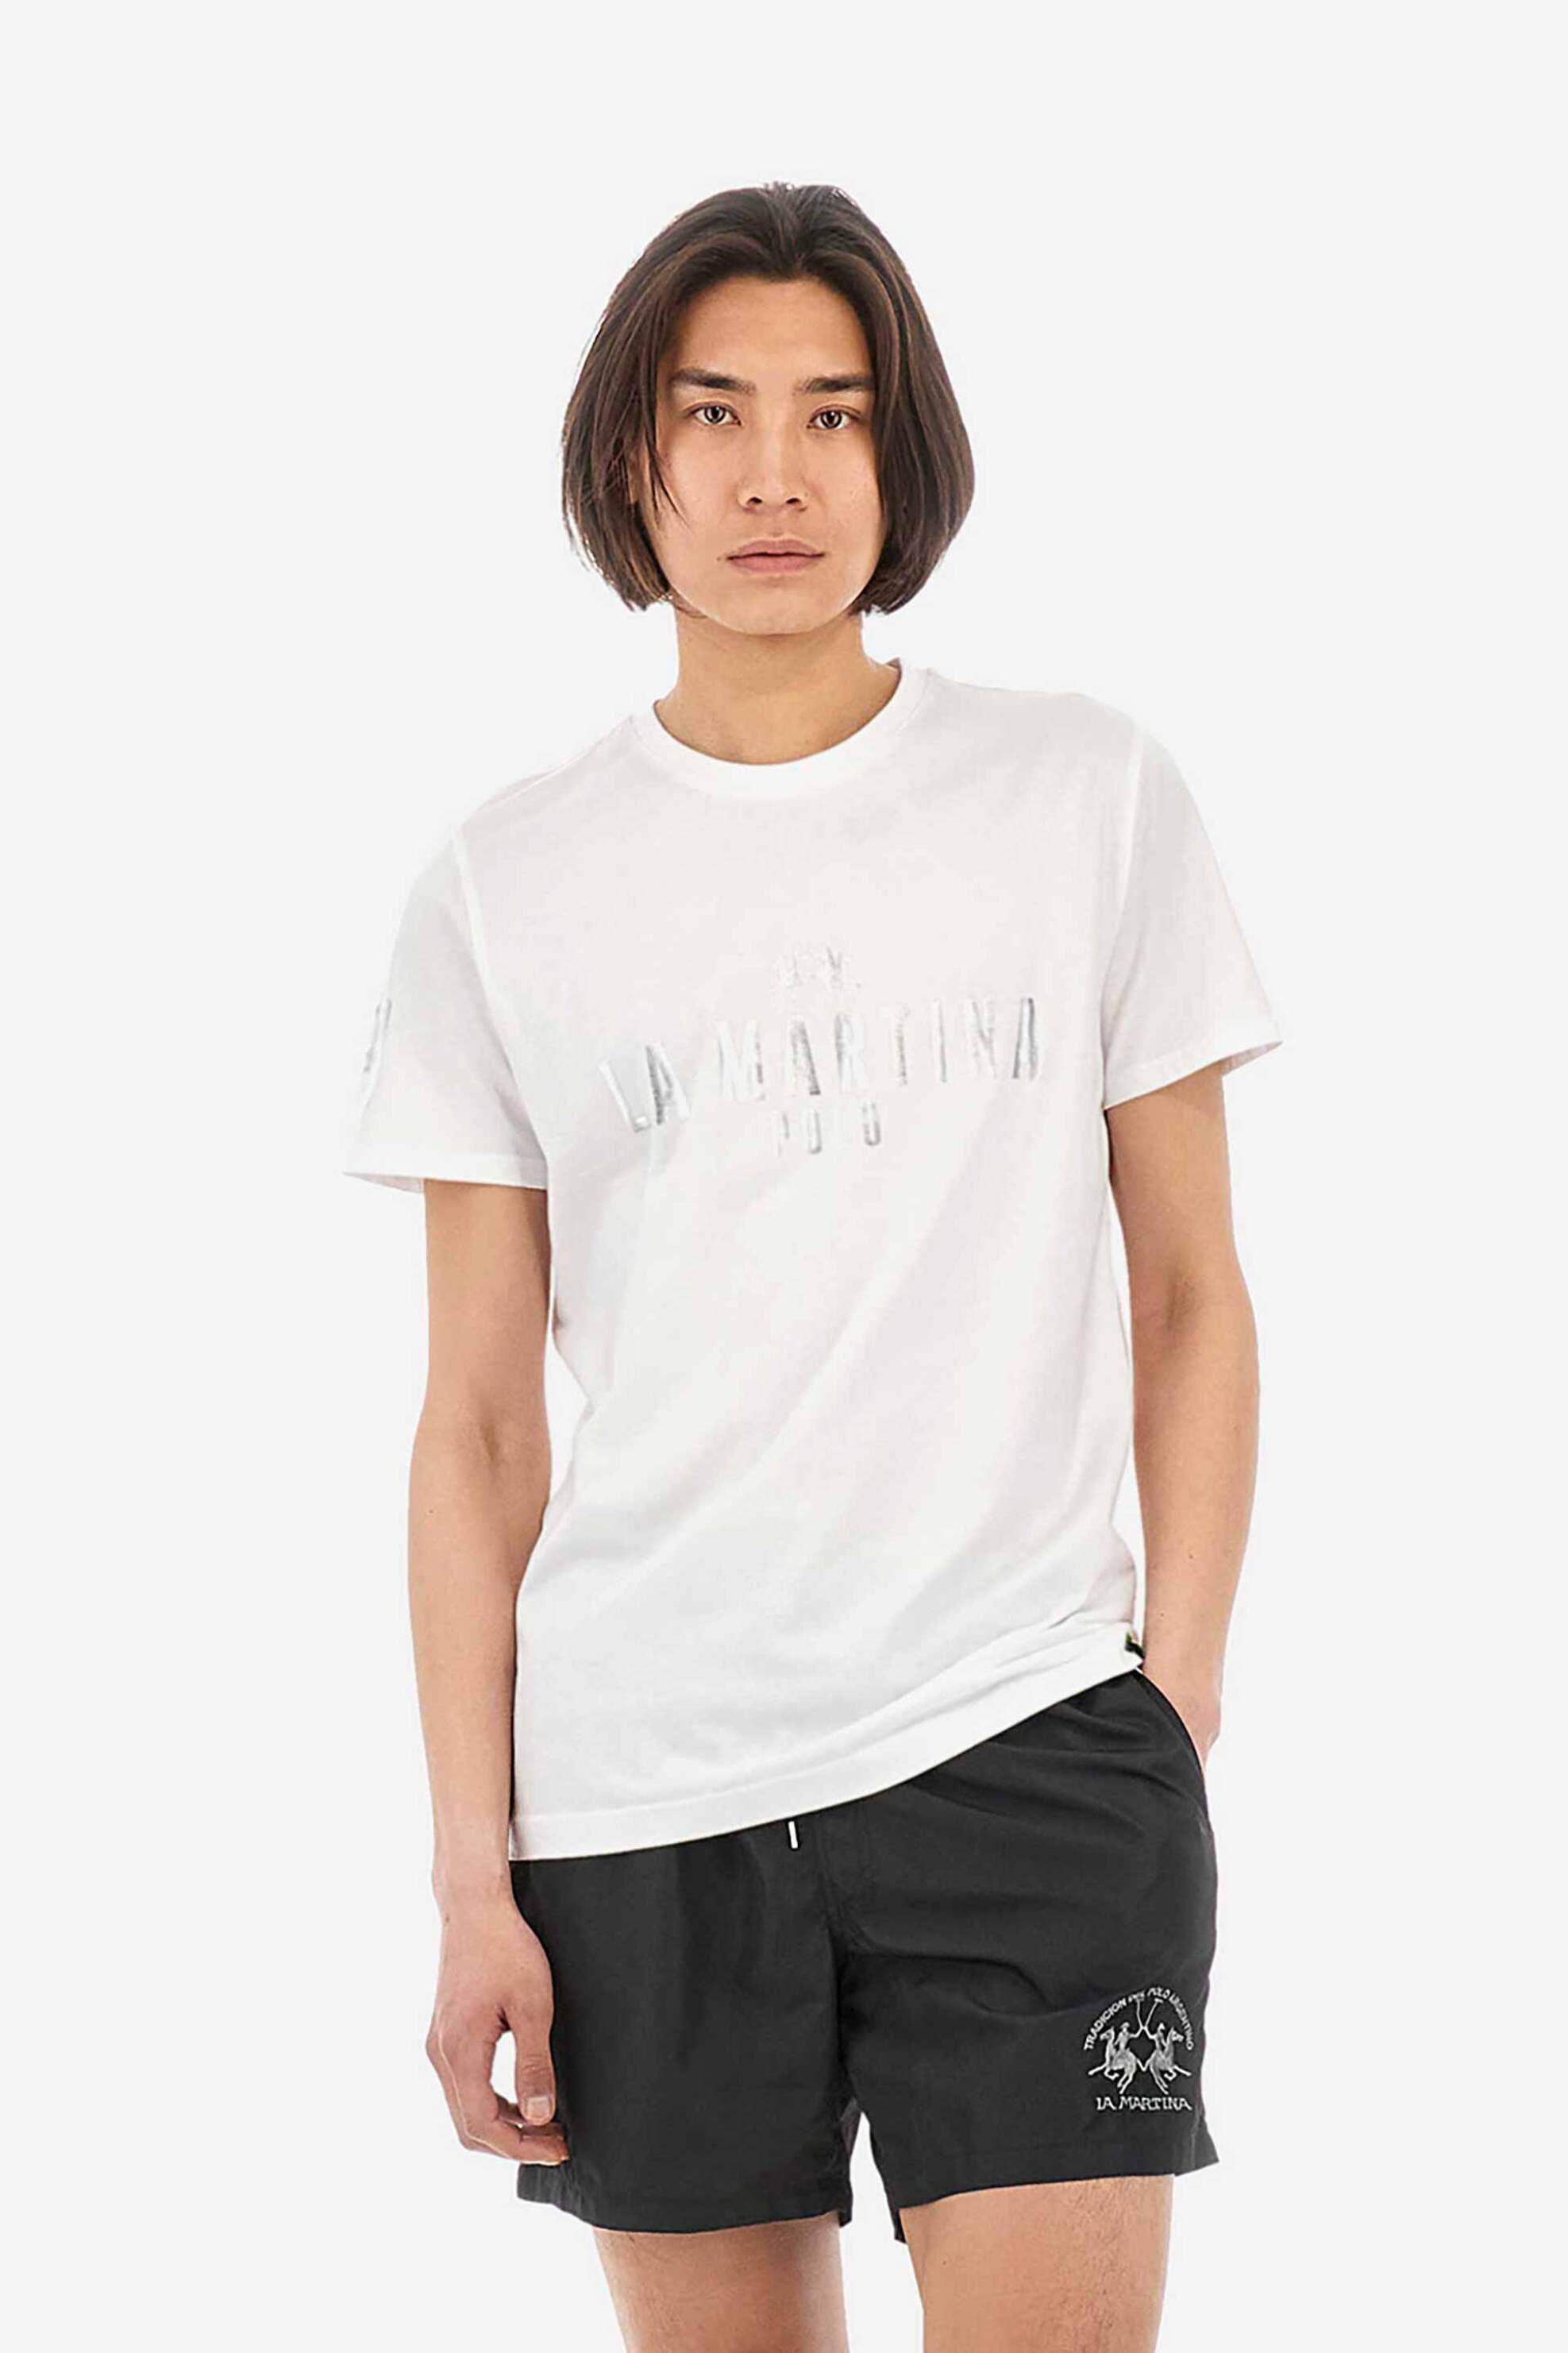 Ανδρική Μόδα > Ανδρικά Ρούχα > Ανδρικές Μπλούζες > Ανδρικά T-Shirts La Martina ανδρικό T-shirt βαμβακερό μονόχρωμο με contrast foil effect prints "Ysmael" - YMR322-JS206 Λευκό